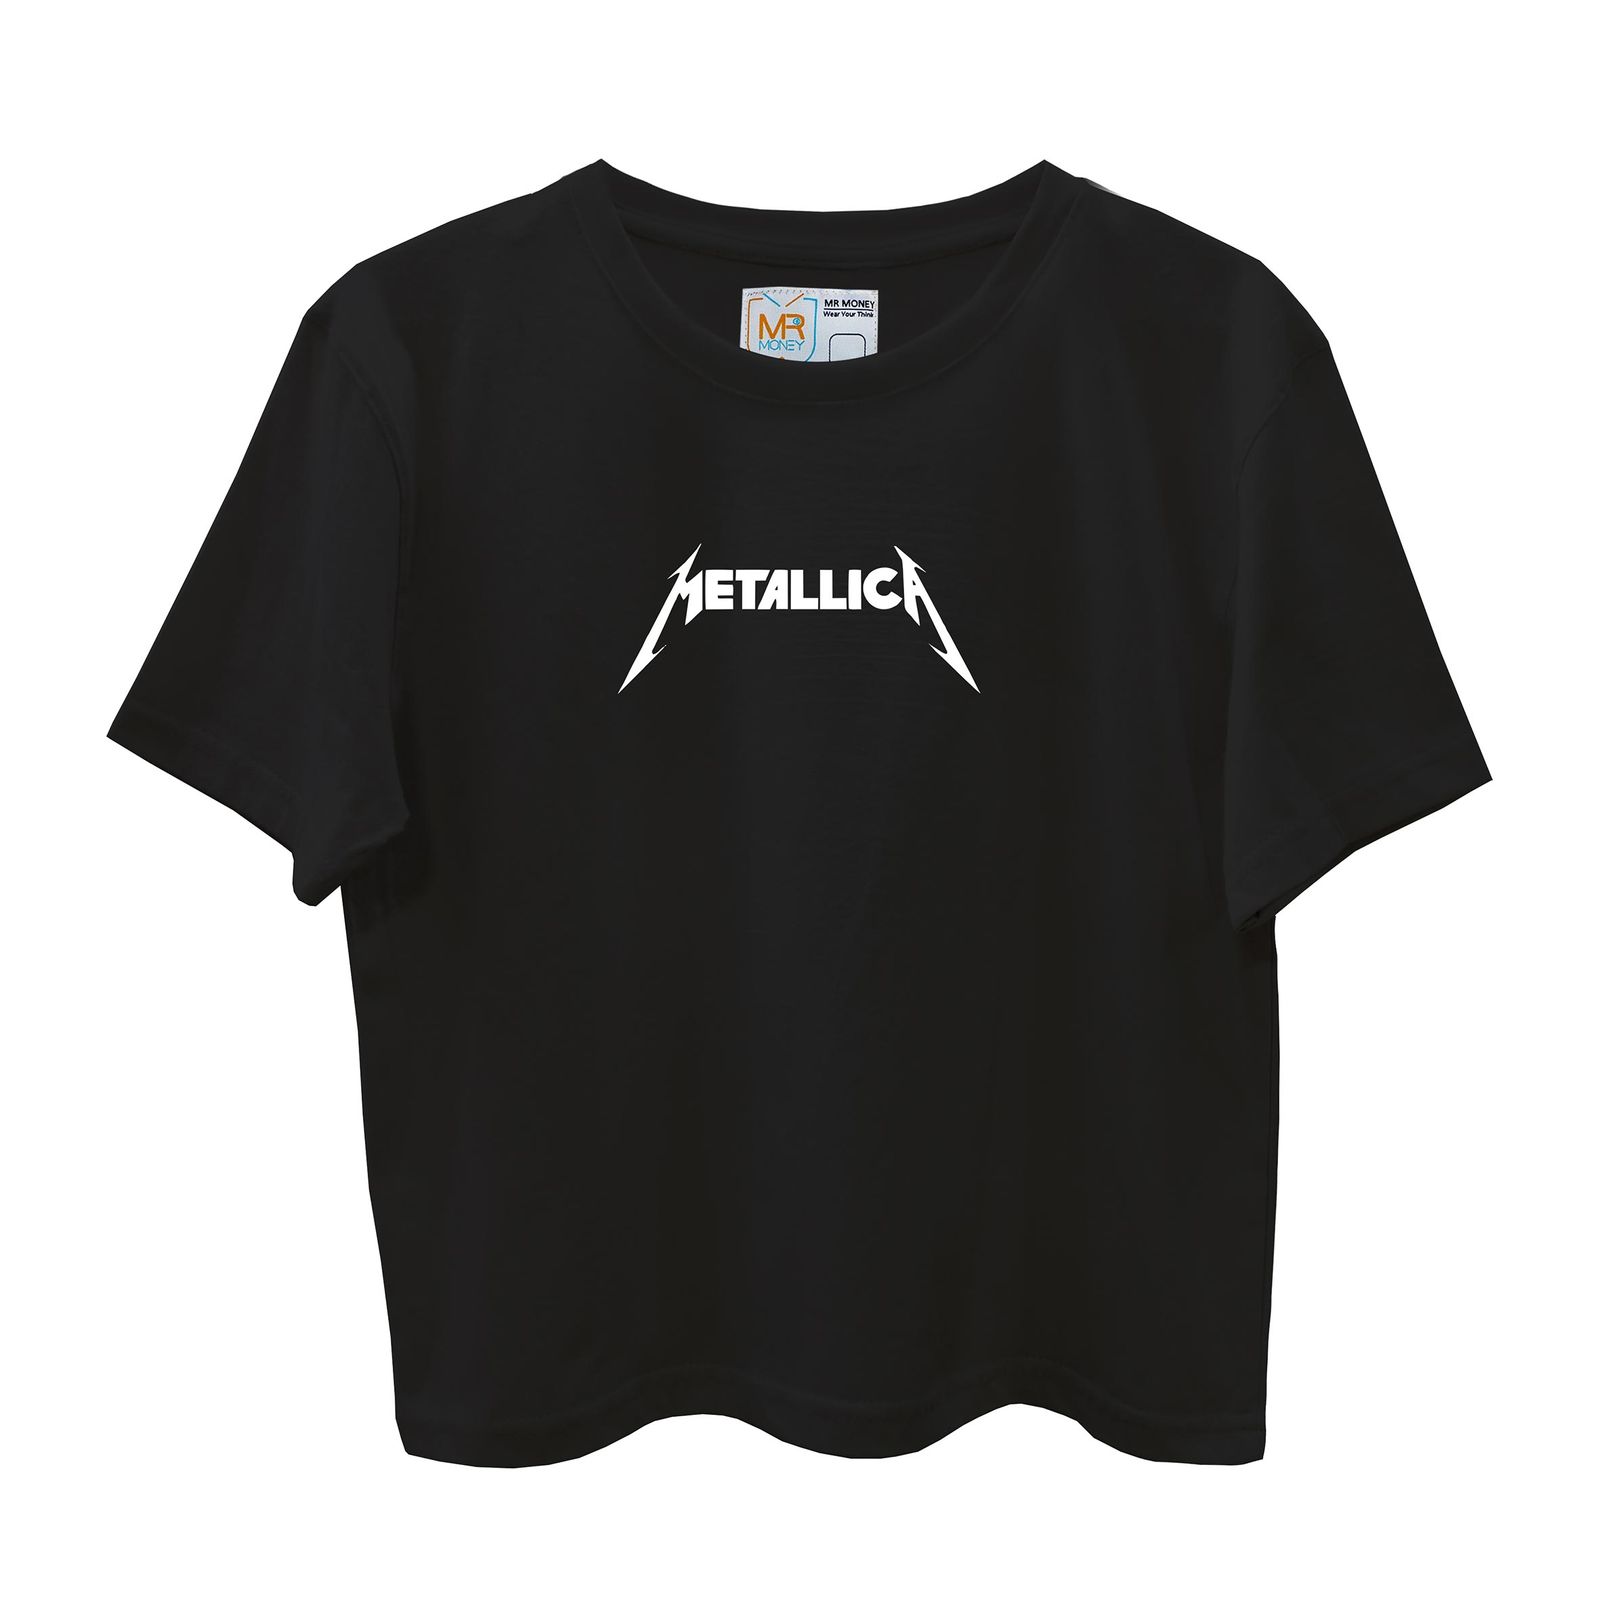 تی شرت آستین کوتاه زنانه مسترمانی مدل metallica -  - 1